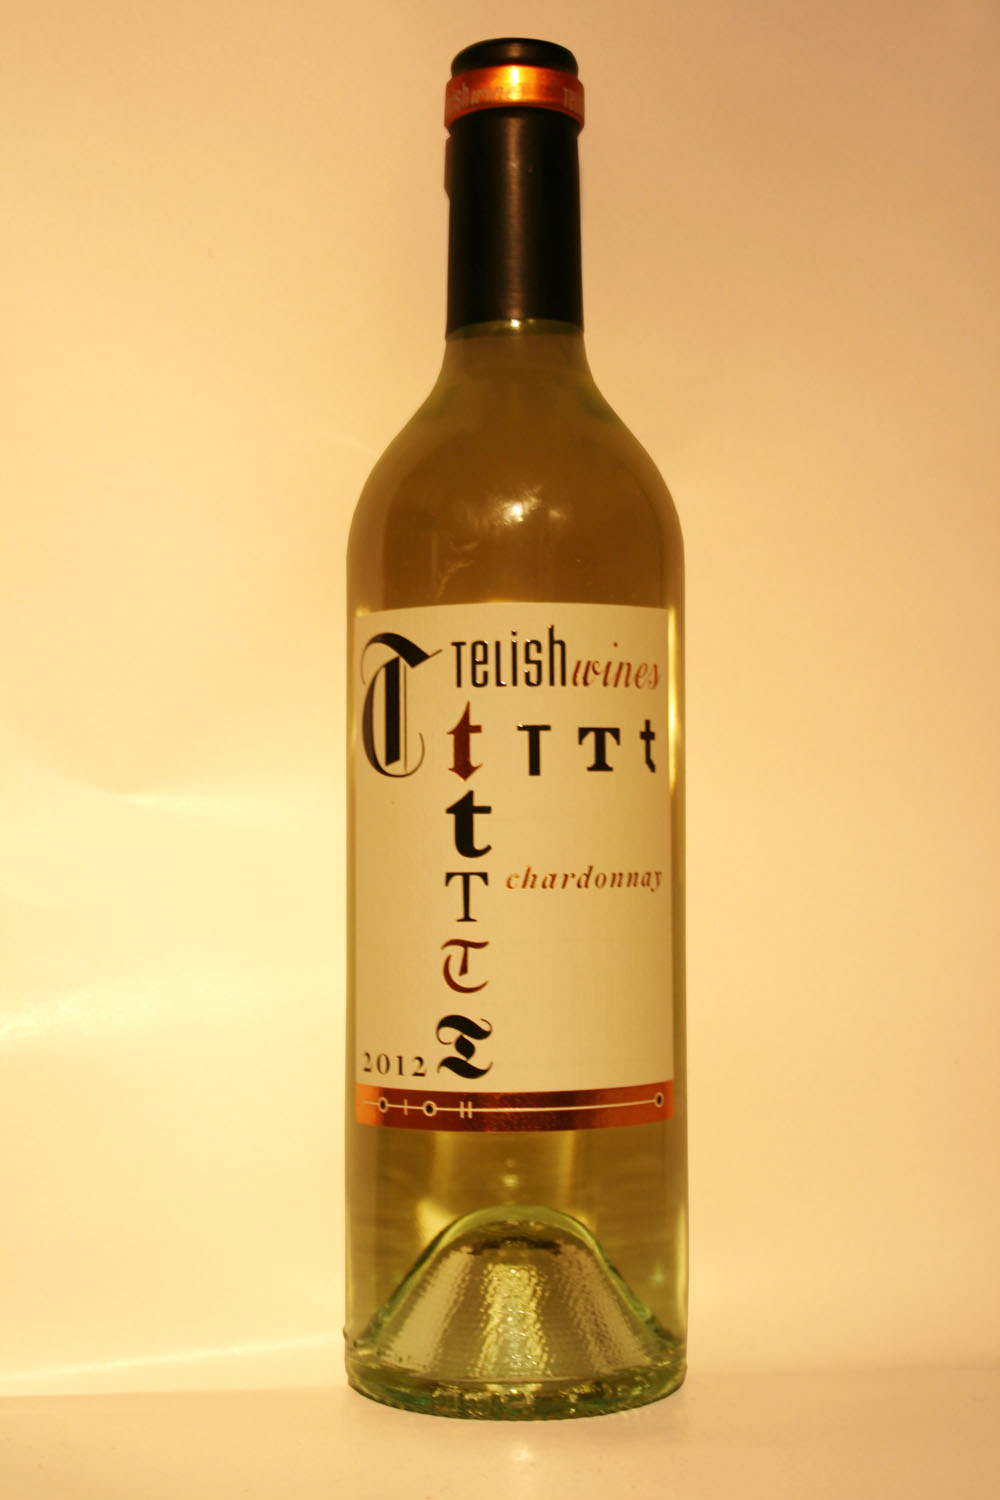 Telish Chardonnay 2012